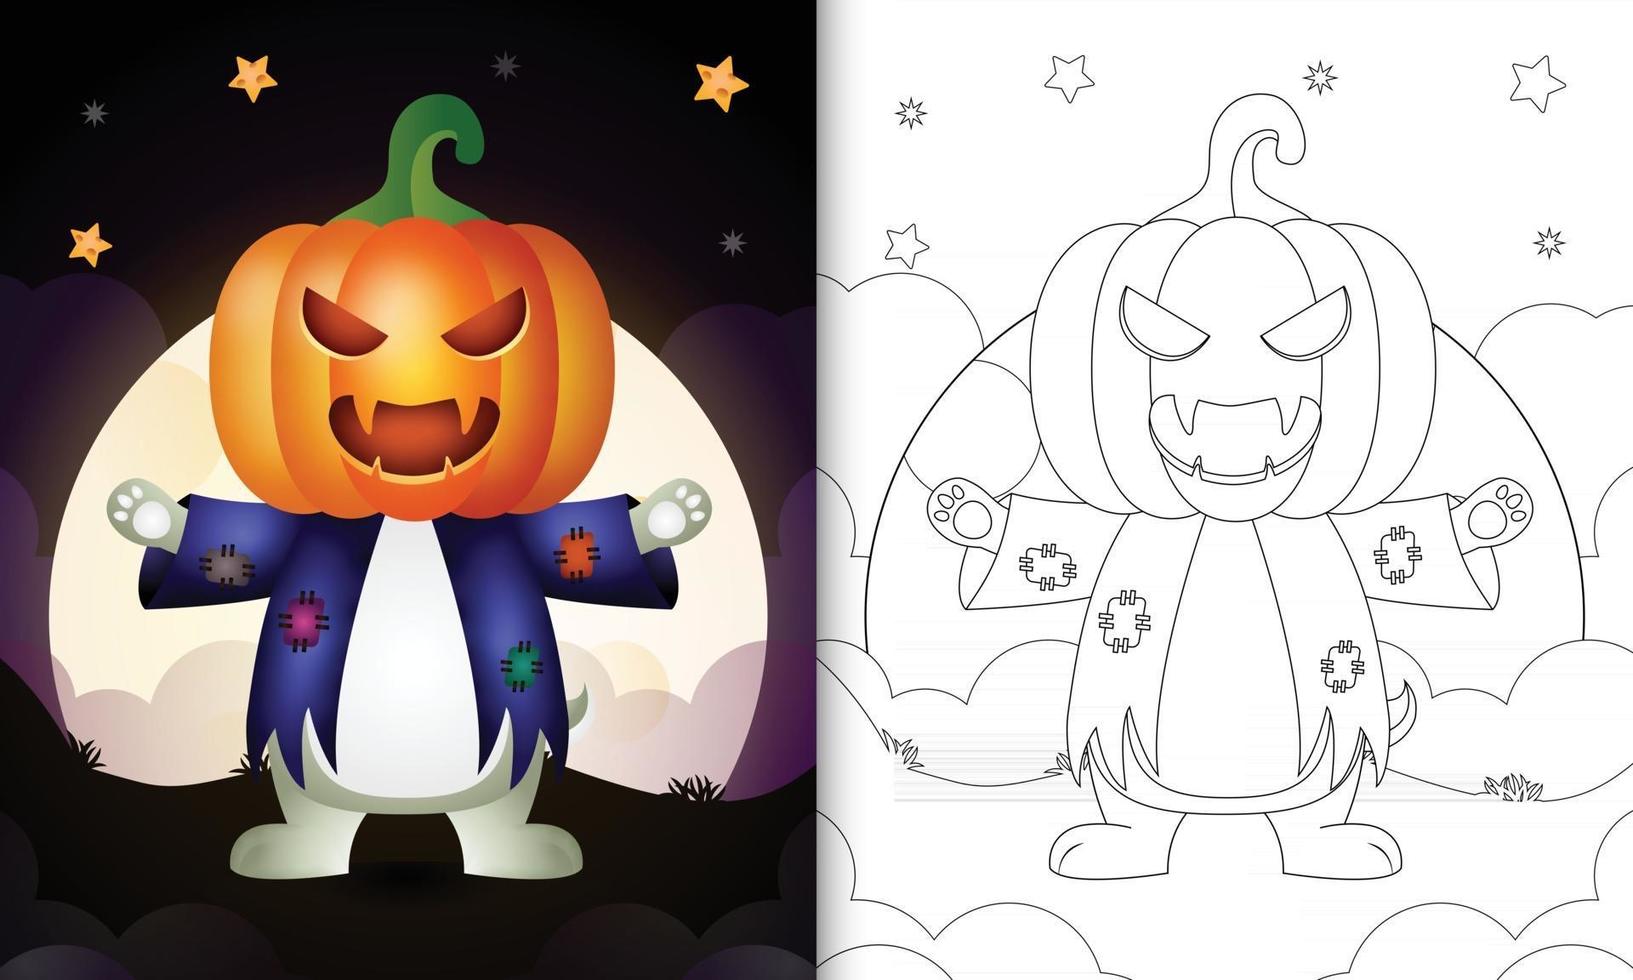 kleurboek met een schattig konijn met kostuum vogelverschrikker halloween vector